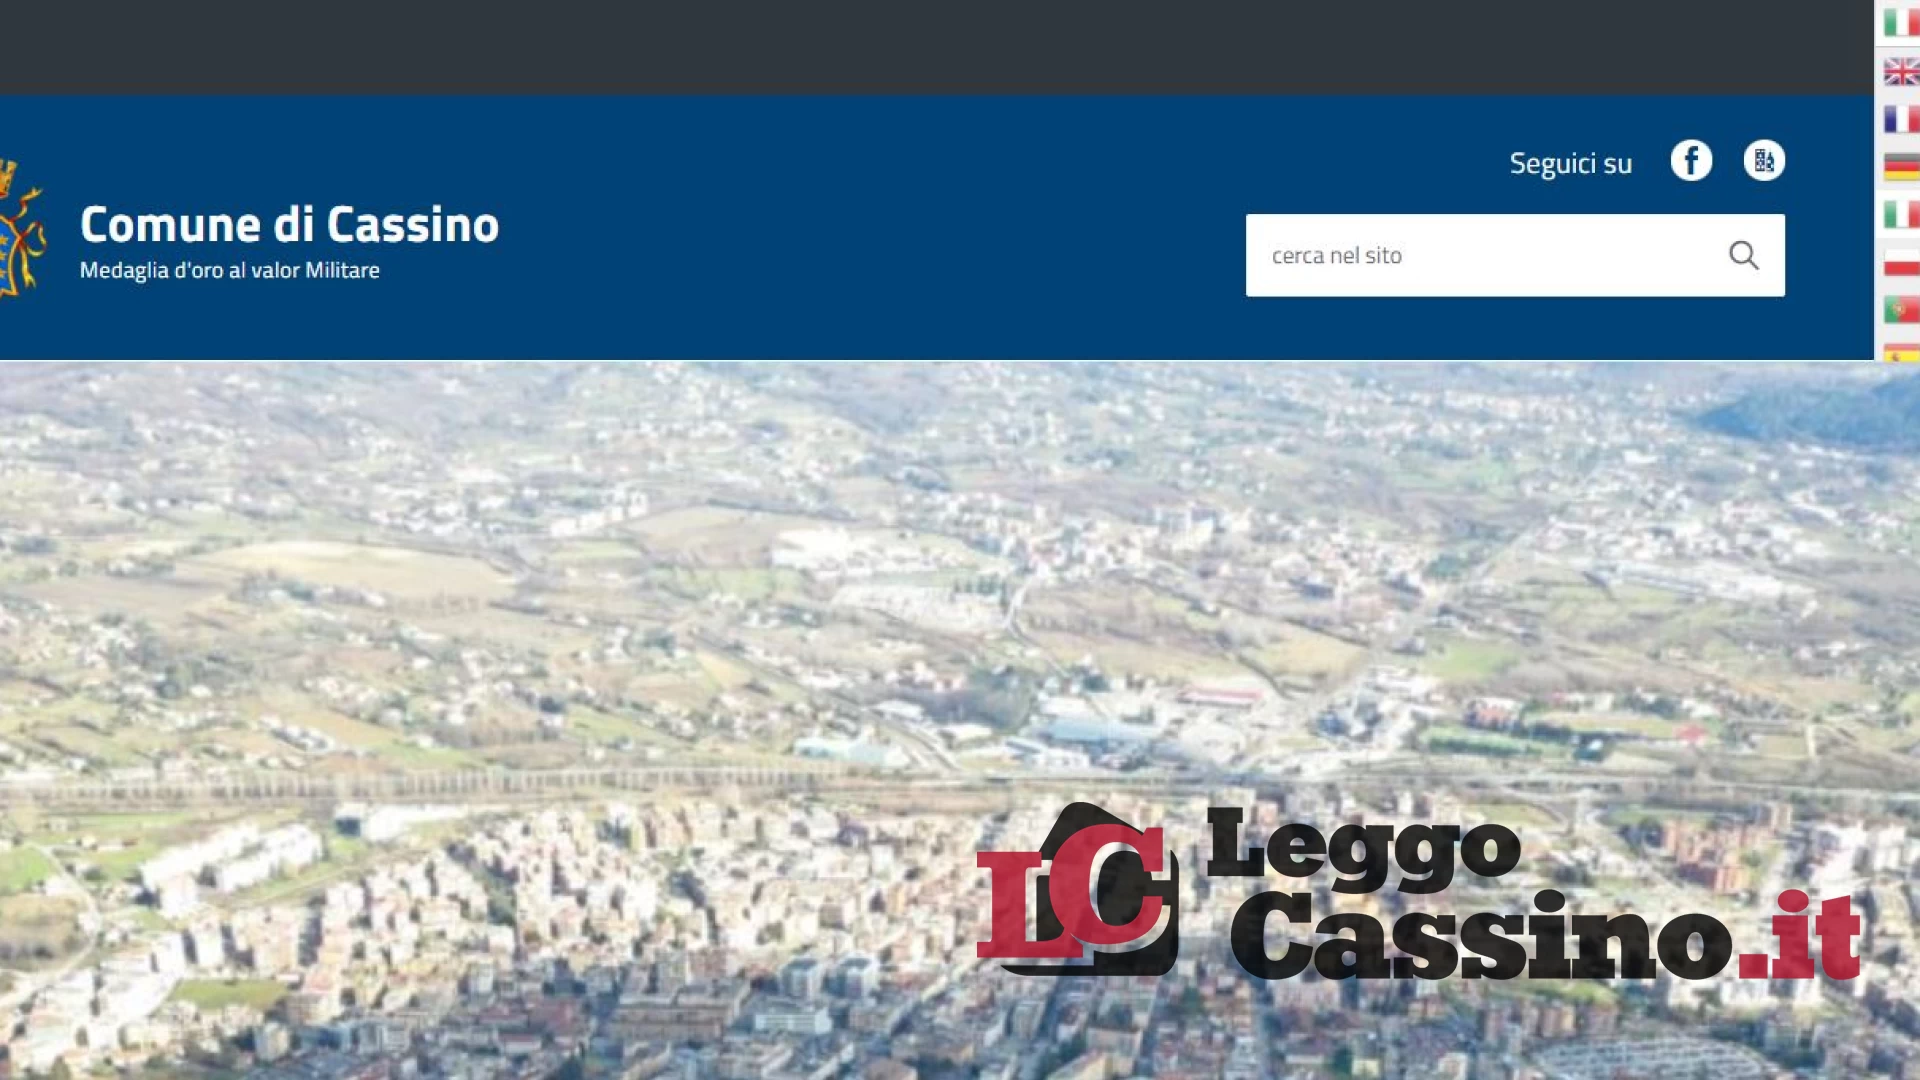 Il sito del Comune di Cassino parlerà sei lingue